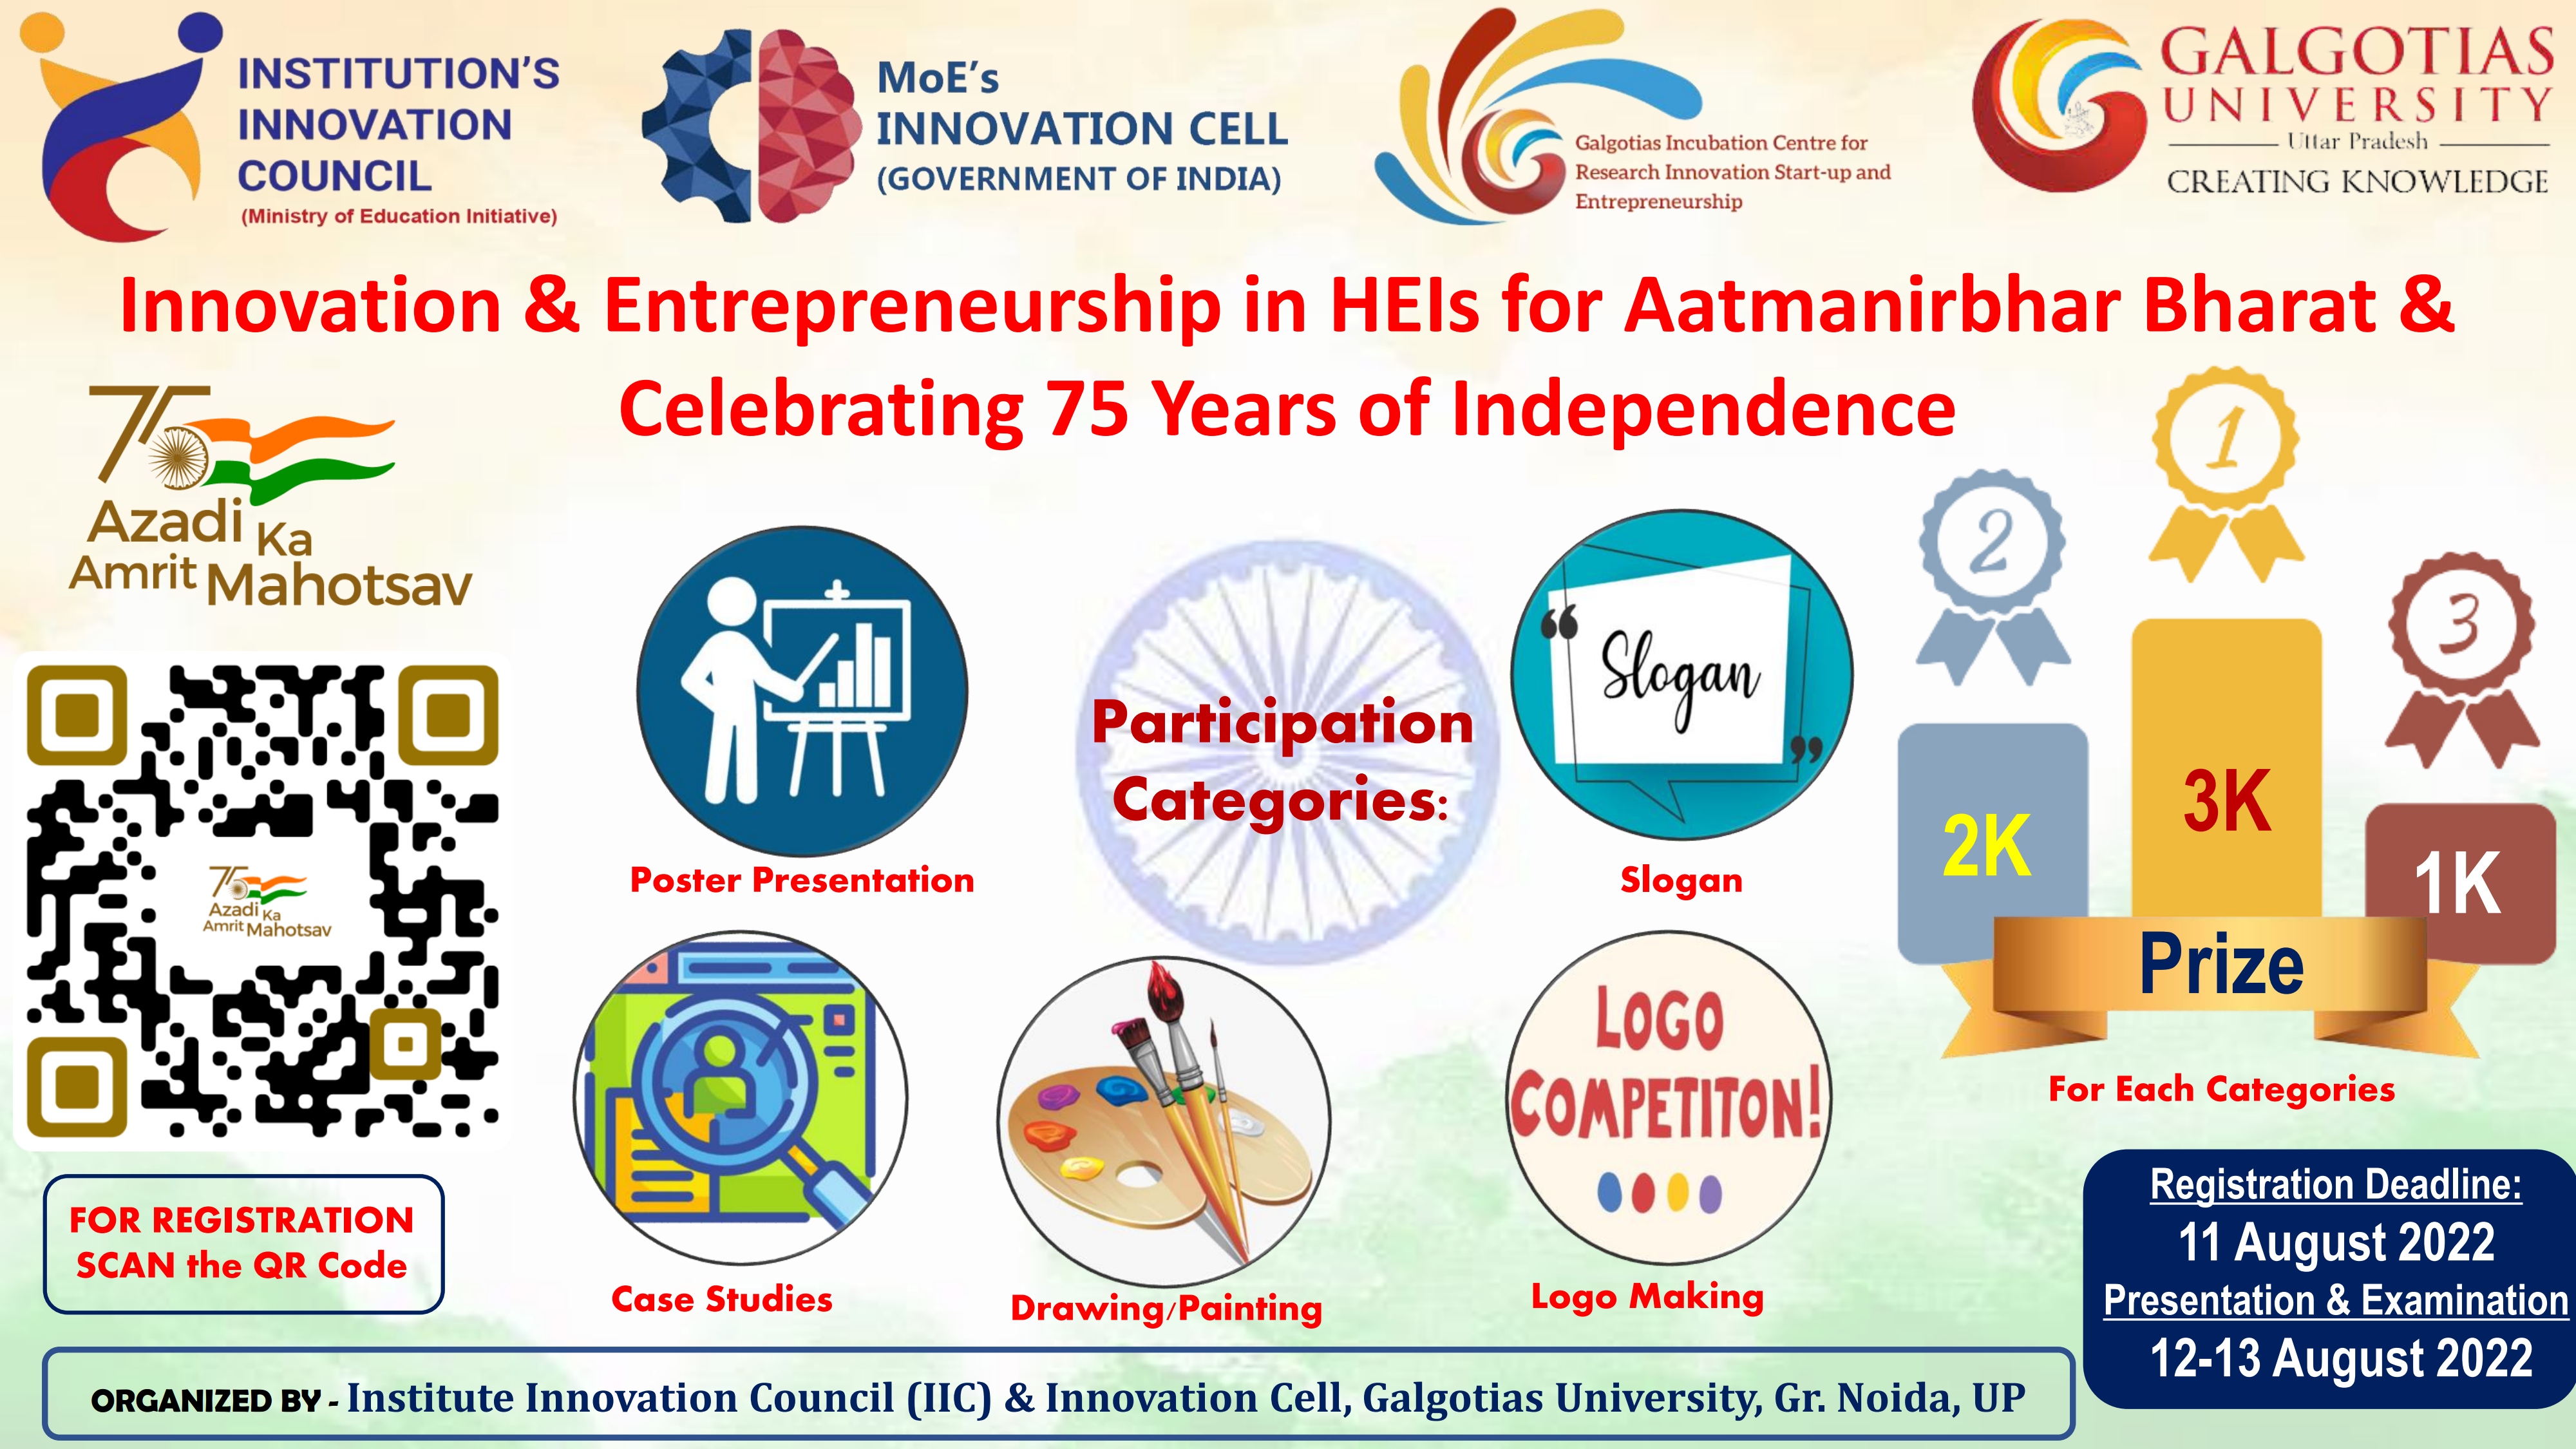 Innovation & Entrepreneurship in HEIs for Aatmanirbhar Bharat